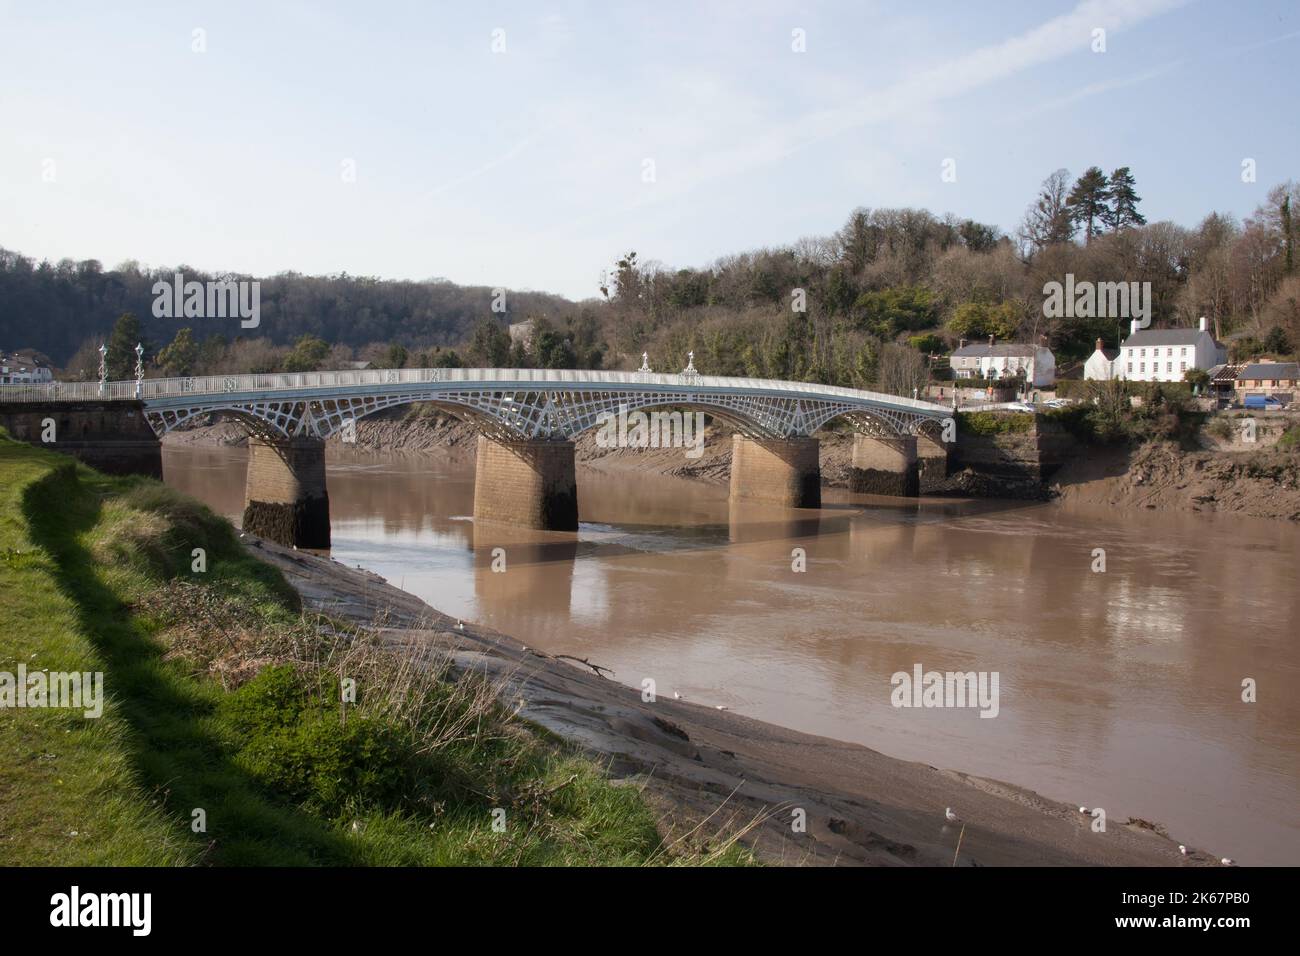 Vistas del puente Chepstow que cruza el río Wye en Chepstow, Monmouthshire, Gales en el Reino Unido Foto de stock